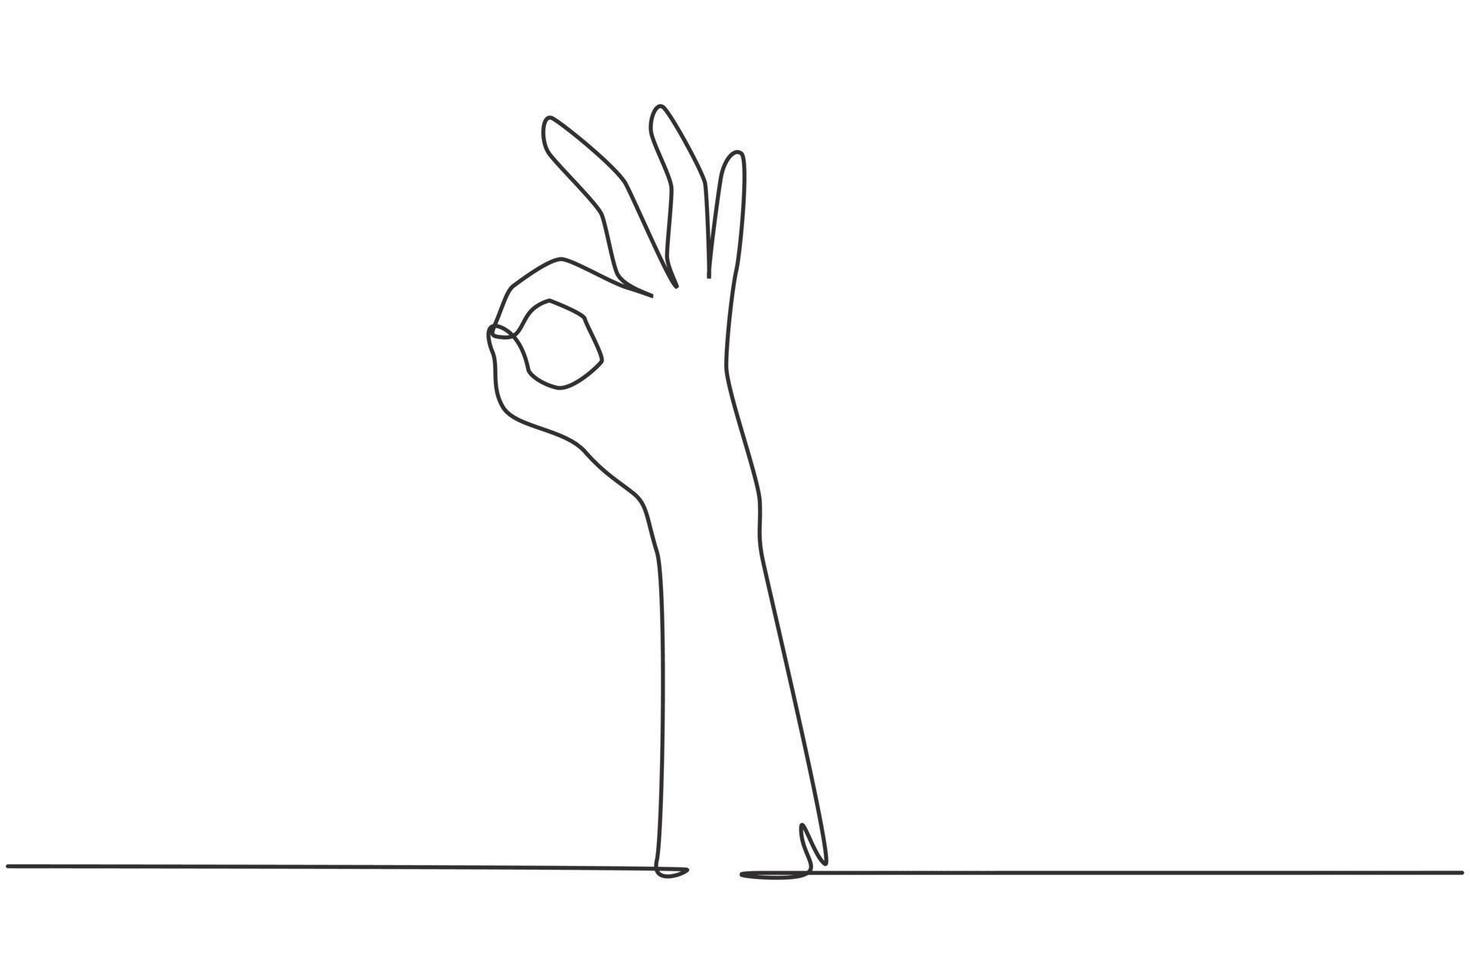 één enkele lijntekeninghand die oke of perfect gebaar toont. nummer drie handen tellen. leer getallen tellen. non-verbale tekens of symbolen. doorlopende lijn tekenen ontwerp grafische vectorillustratie vector